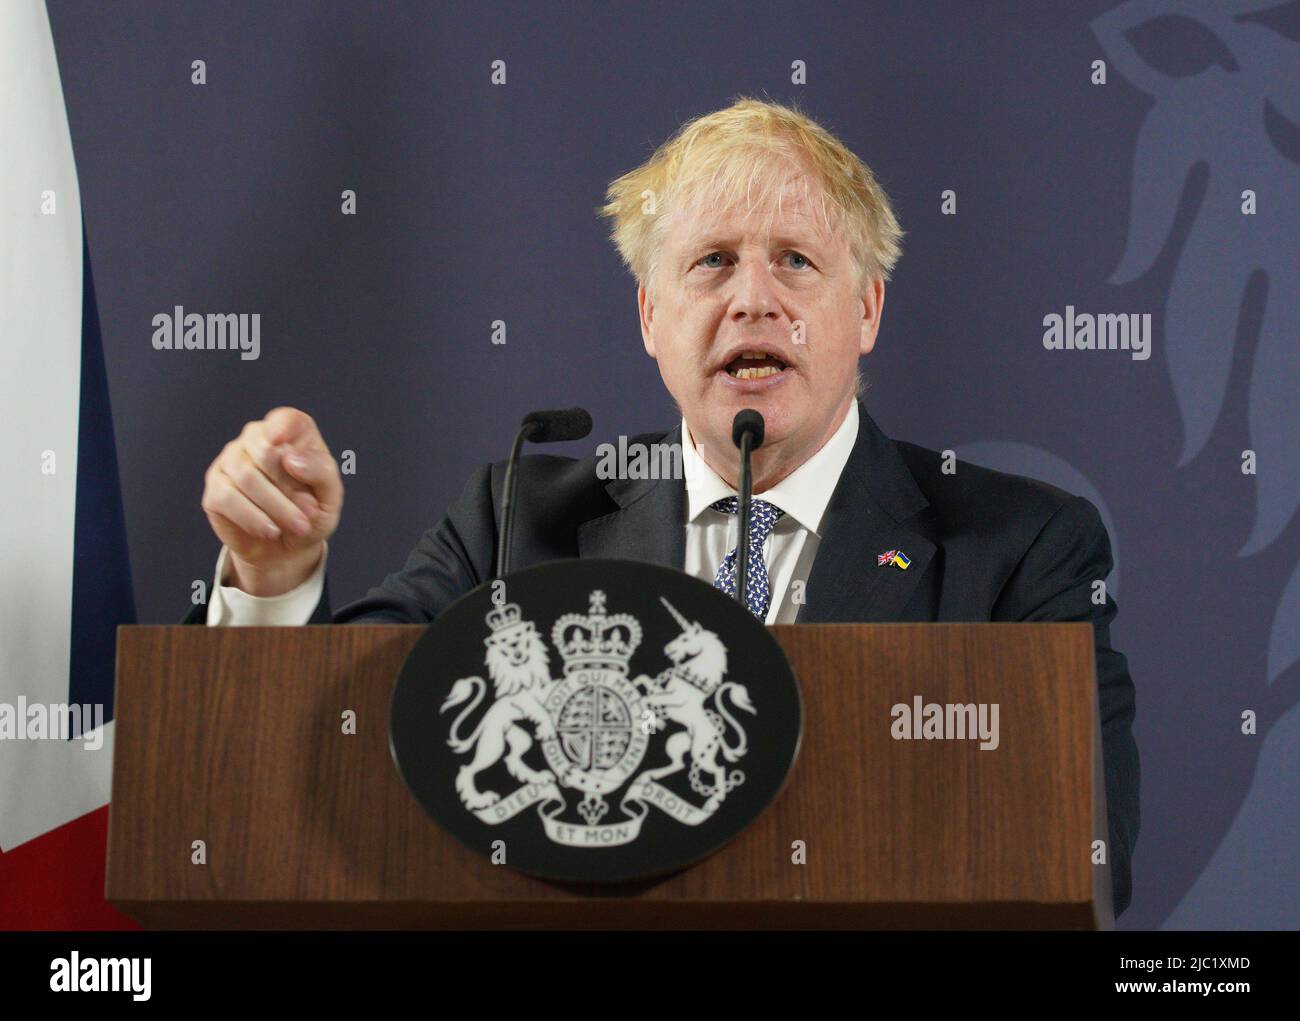 Premierminister Boris Johnson während seiner Rede in Blackpool und am Fylde College in Blackpool, Lancashire, kündigte er neue Maßnahmen an, um potenziell Millionen von Menschen auf die Grundstücksleiter zu helfen. Bilddatum: Donnerstag, 9. Juni 2022. Stockfoto